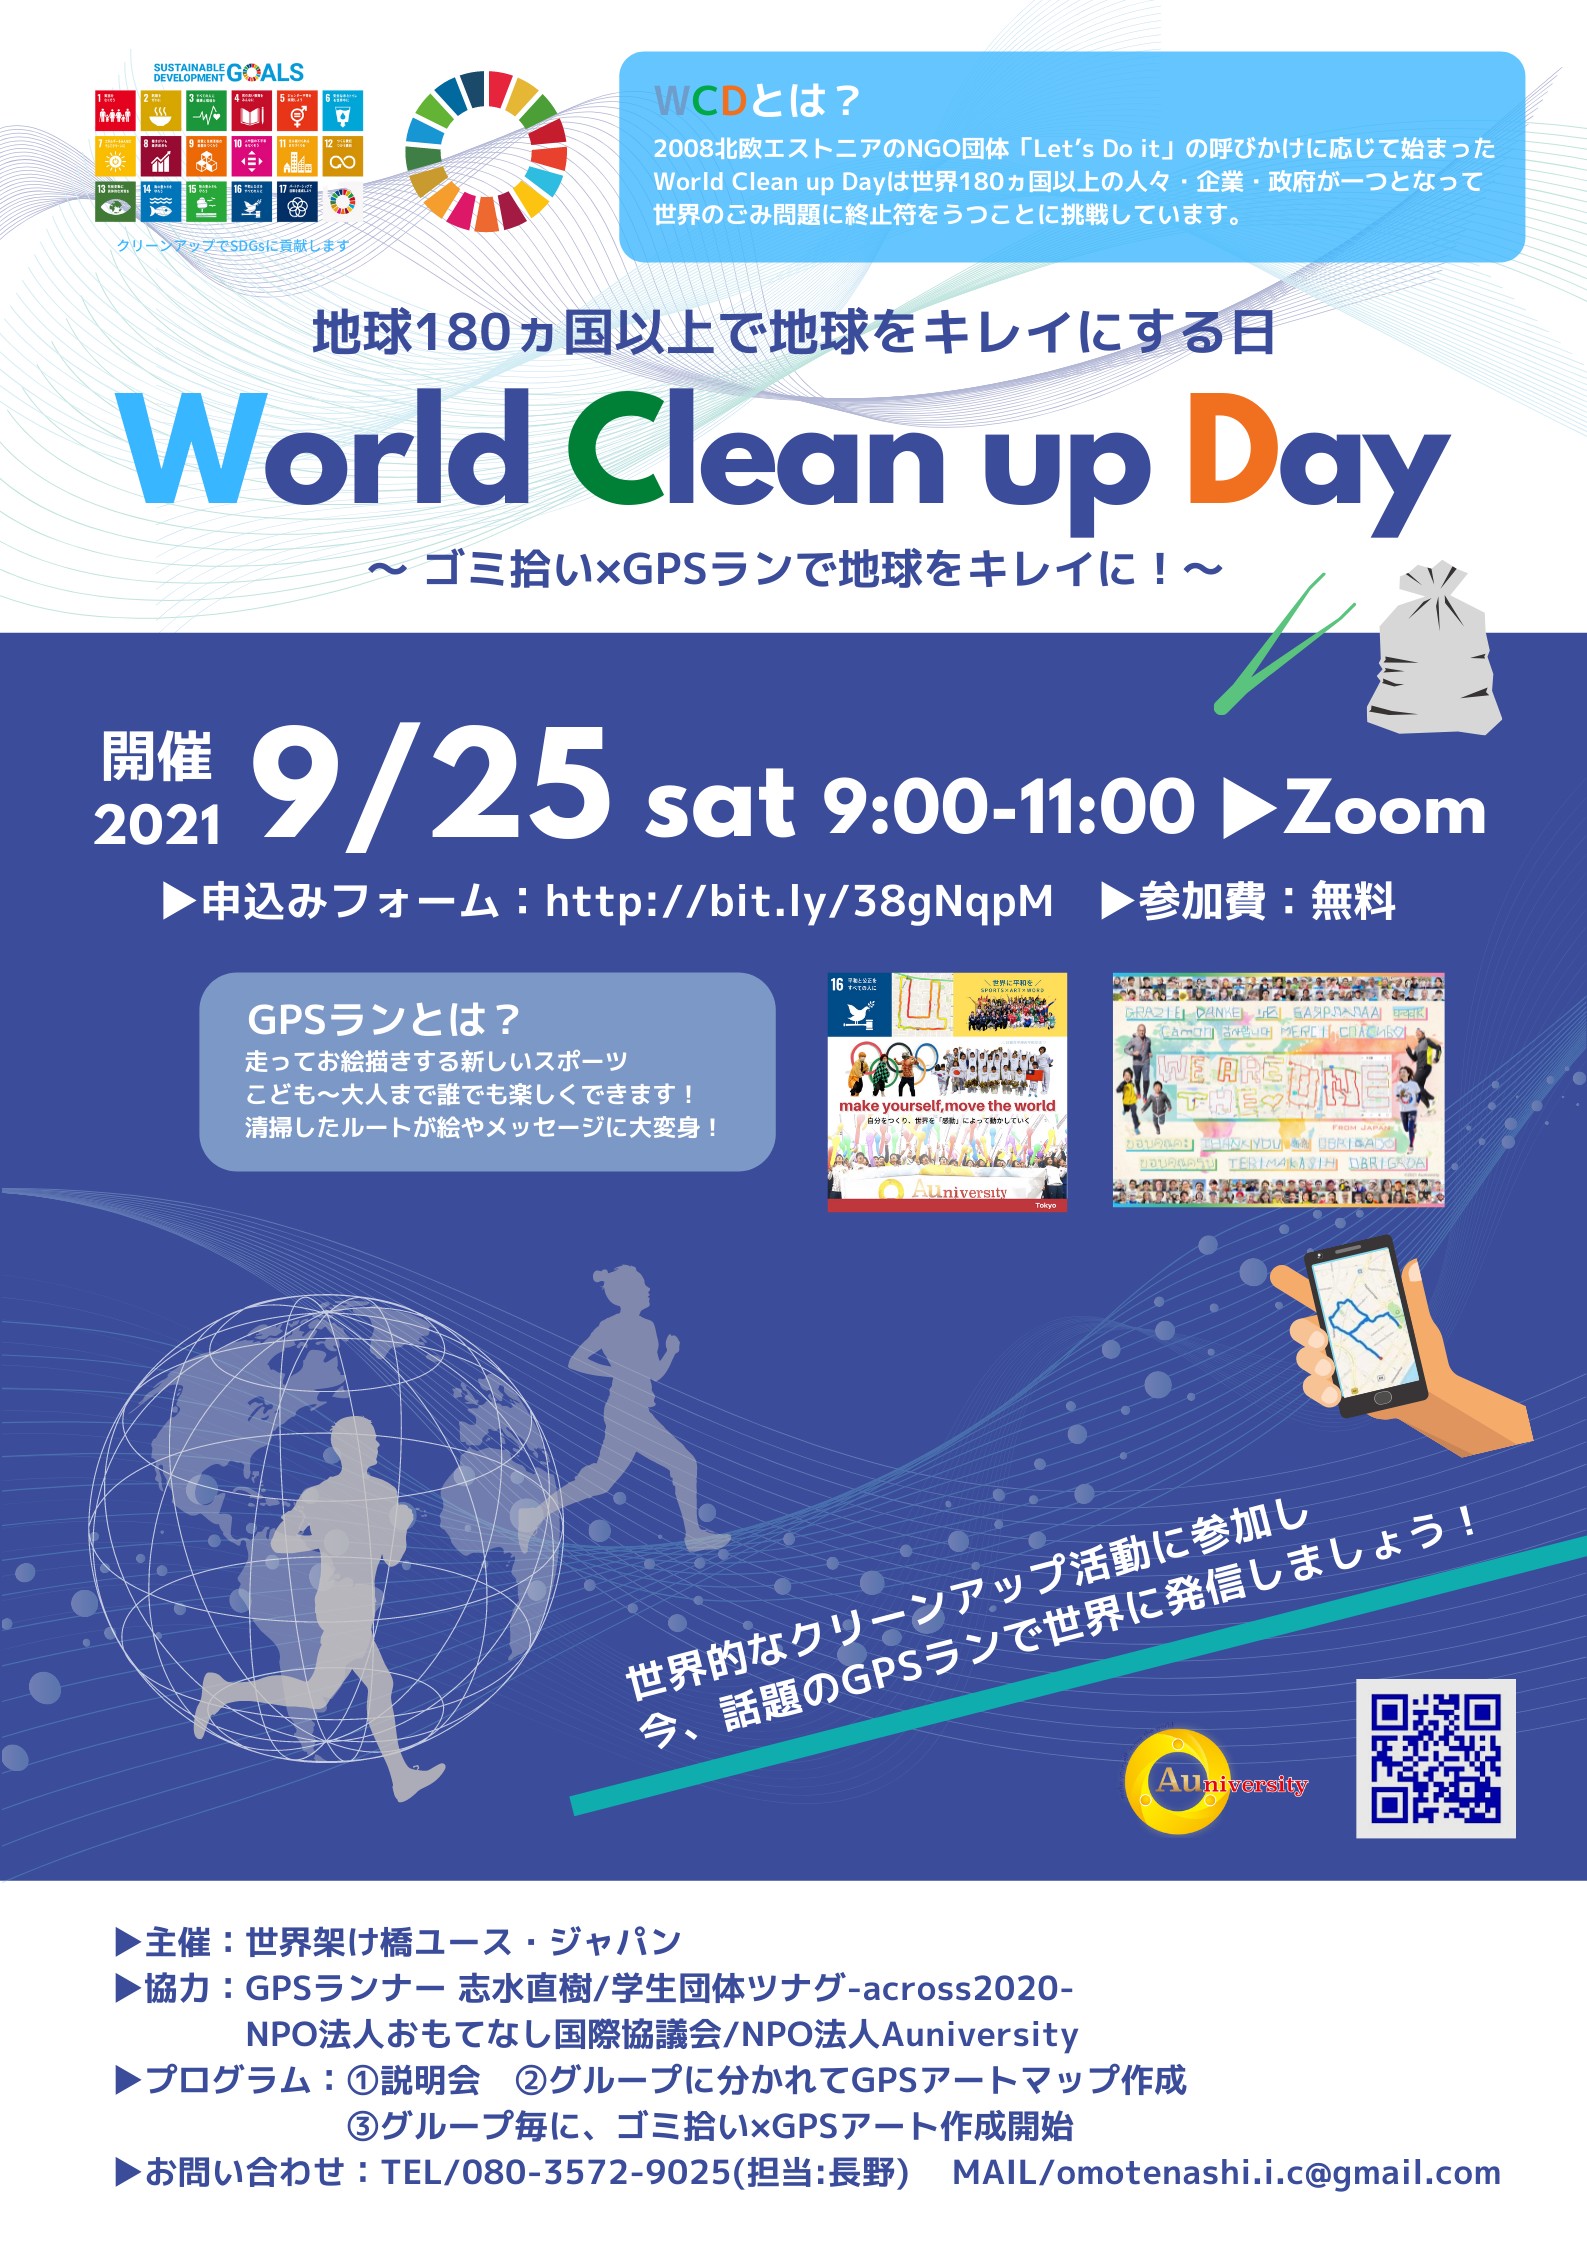 地球180カ国以上で地球をキレイにする日「World Clean Up Day」〜ゴミ拾い×GPSランで地球をキレイに！〜